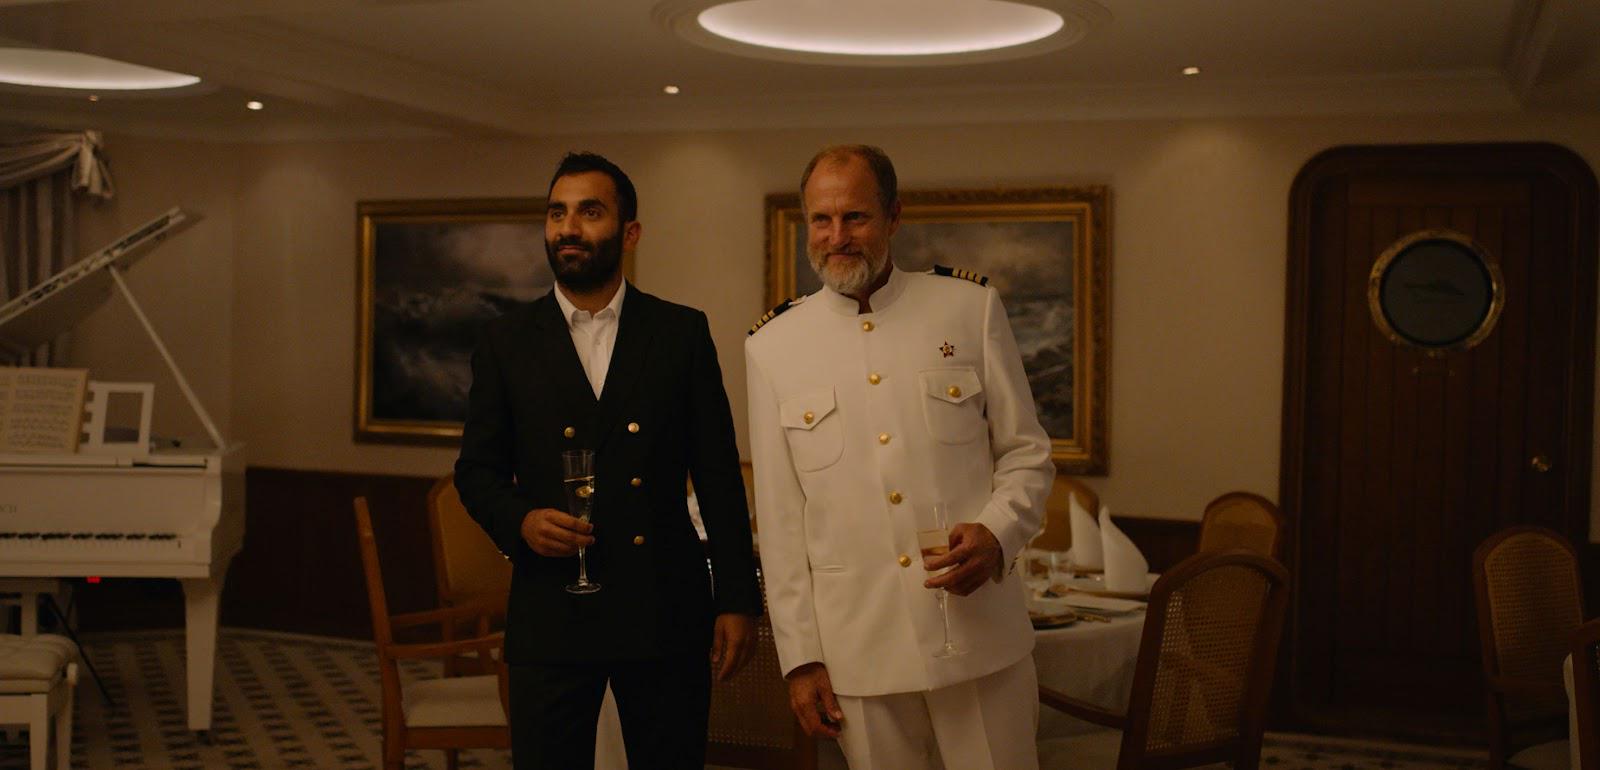 Woody Harrelson ima majhno epizodno vlogo kot zapiti ladijski kapitan, ki se iz svoje kabine prikaže na edini večer, ko je napovedano nemirno morje. Sledi kaos. Foto: IMDb